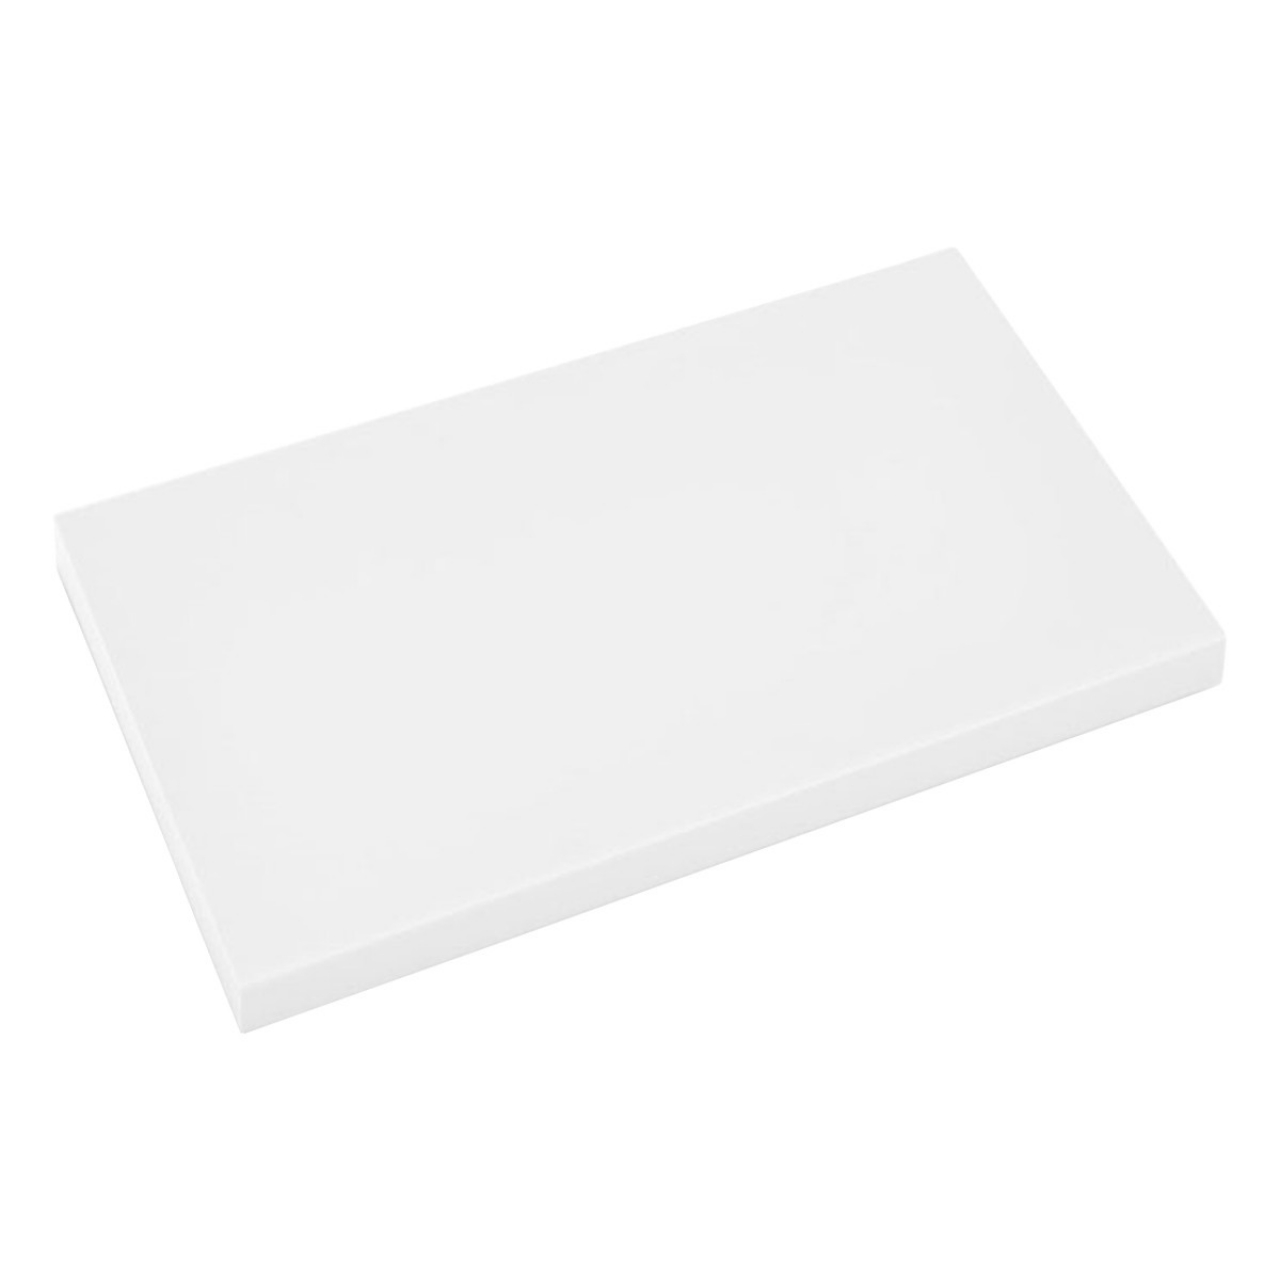 Cutting board 50x32,5cm white